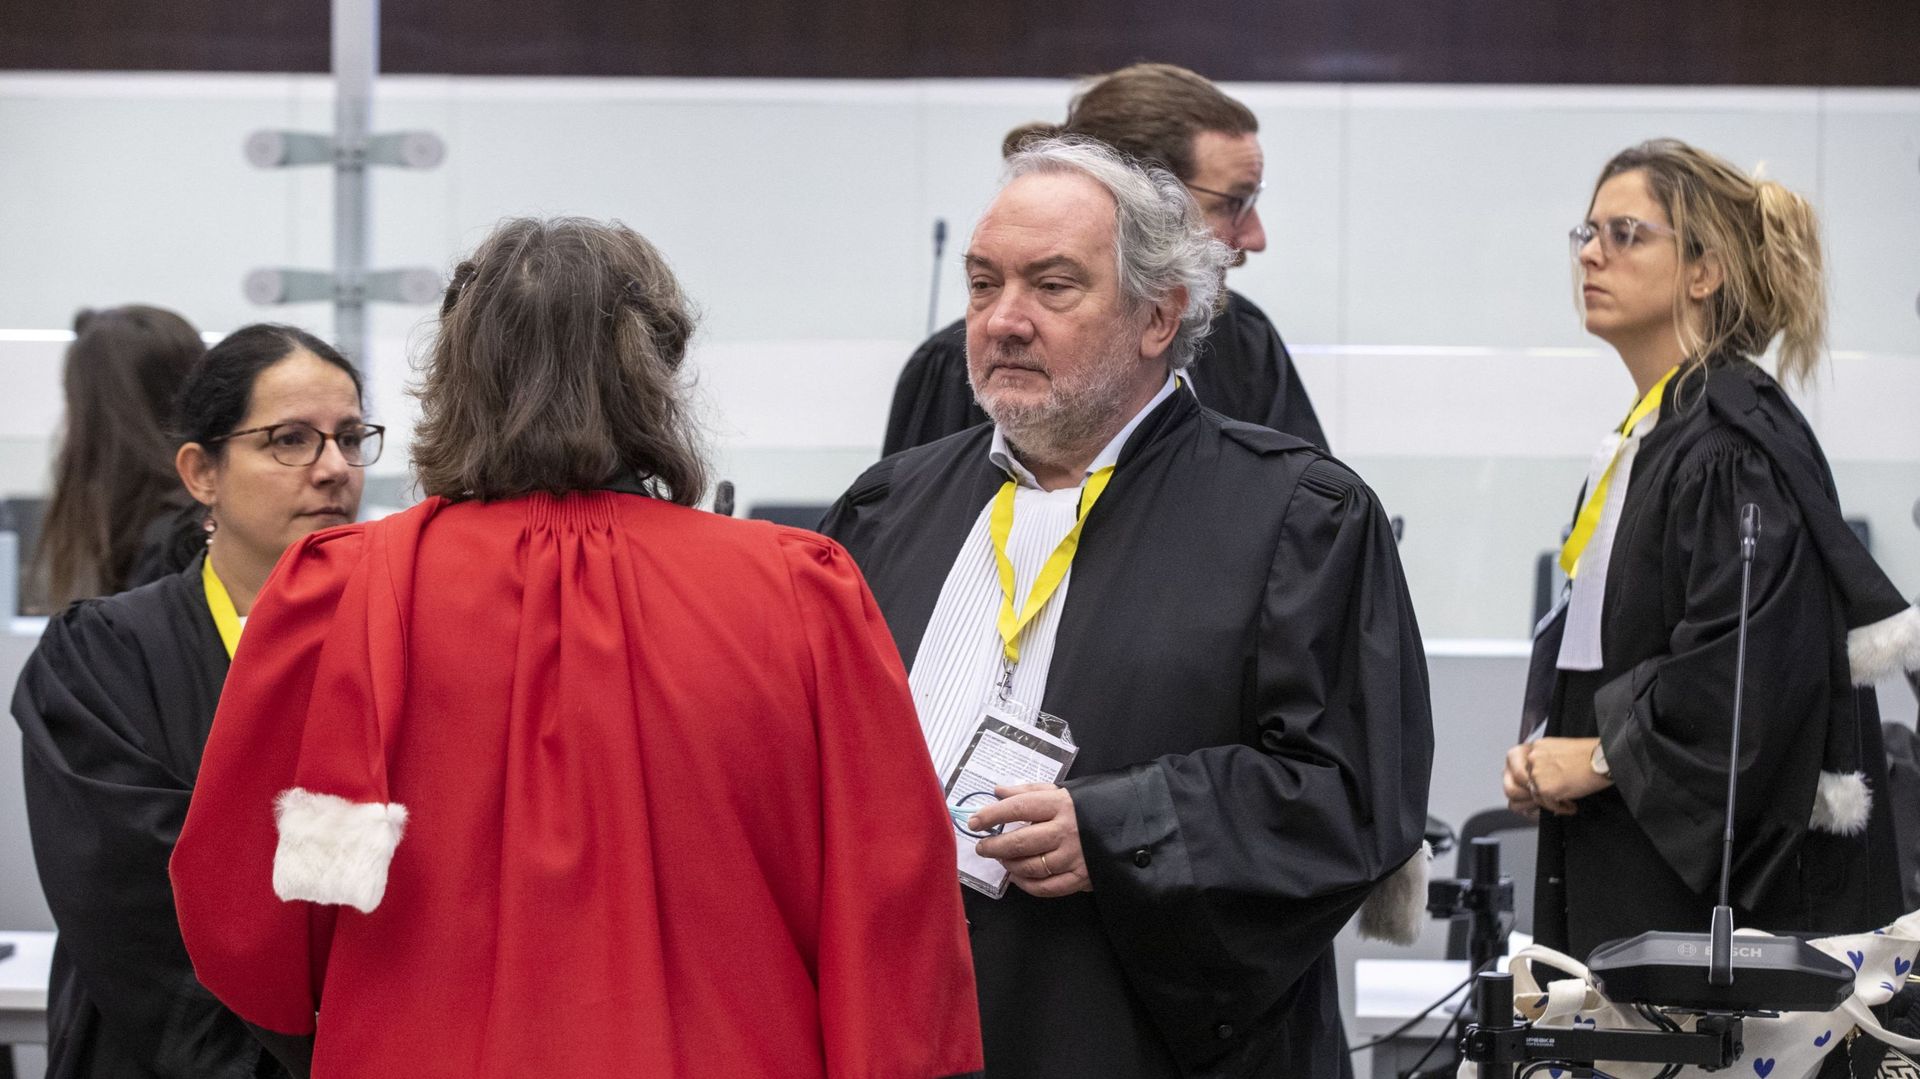 L’avocate Delphine Paci, défendant Salah Abdeslam et l’avocat Vincent Lurquin photographiés lors d’une séance du procès des attentats du 22 mars 2016, à la cour d’assises de Bruxelles-Capitale, mercredi 4 janvier 2023 sur le site de Justitia à Haren, Brux